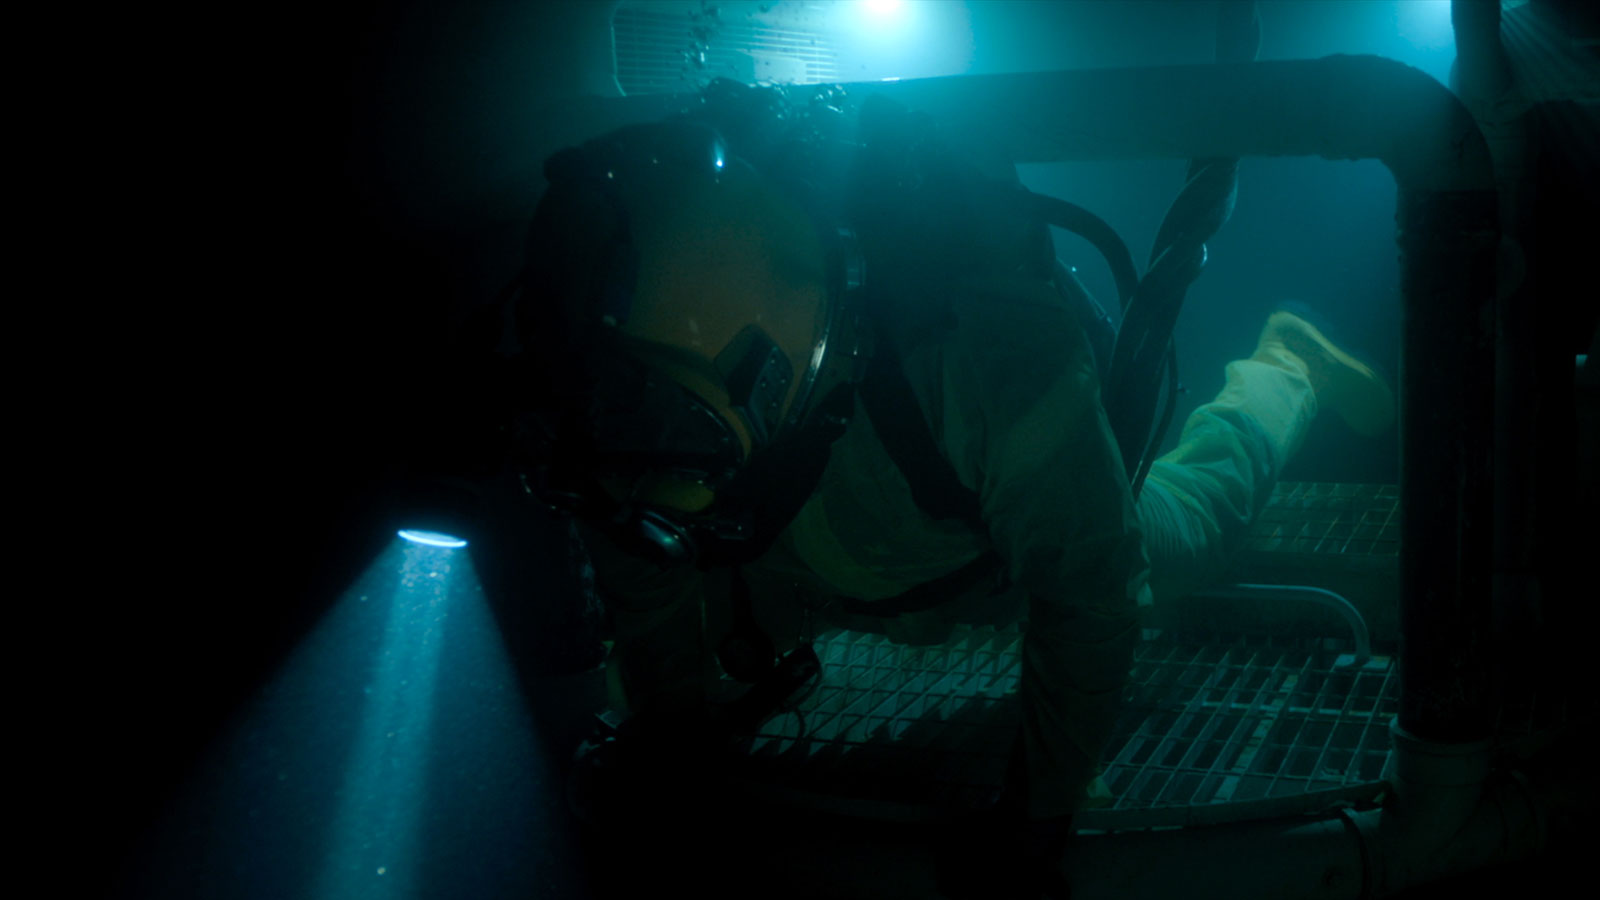 A diver climbs through an underwater vessel